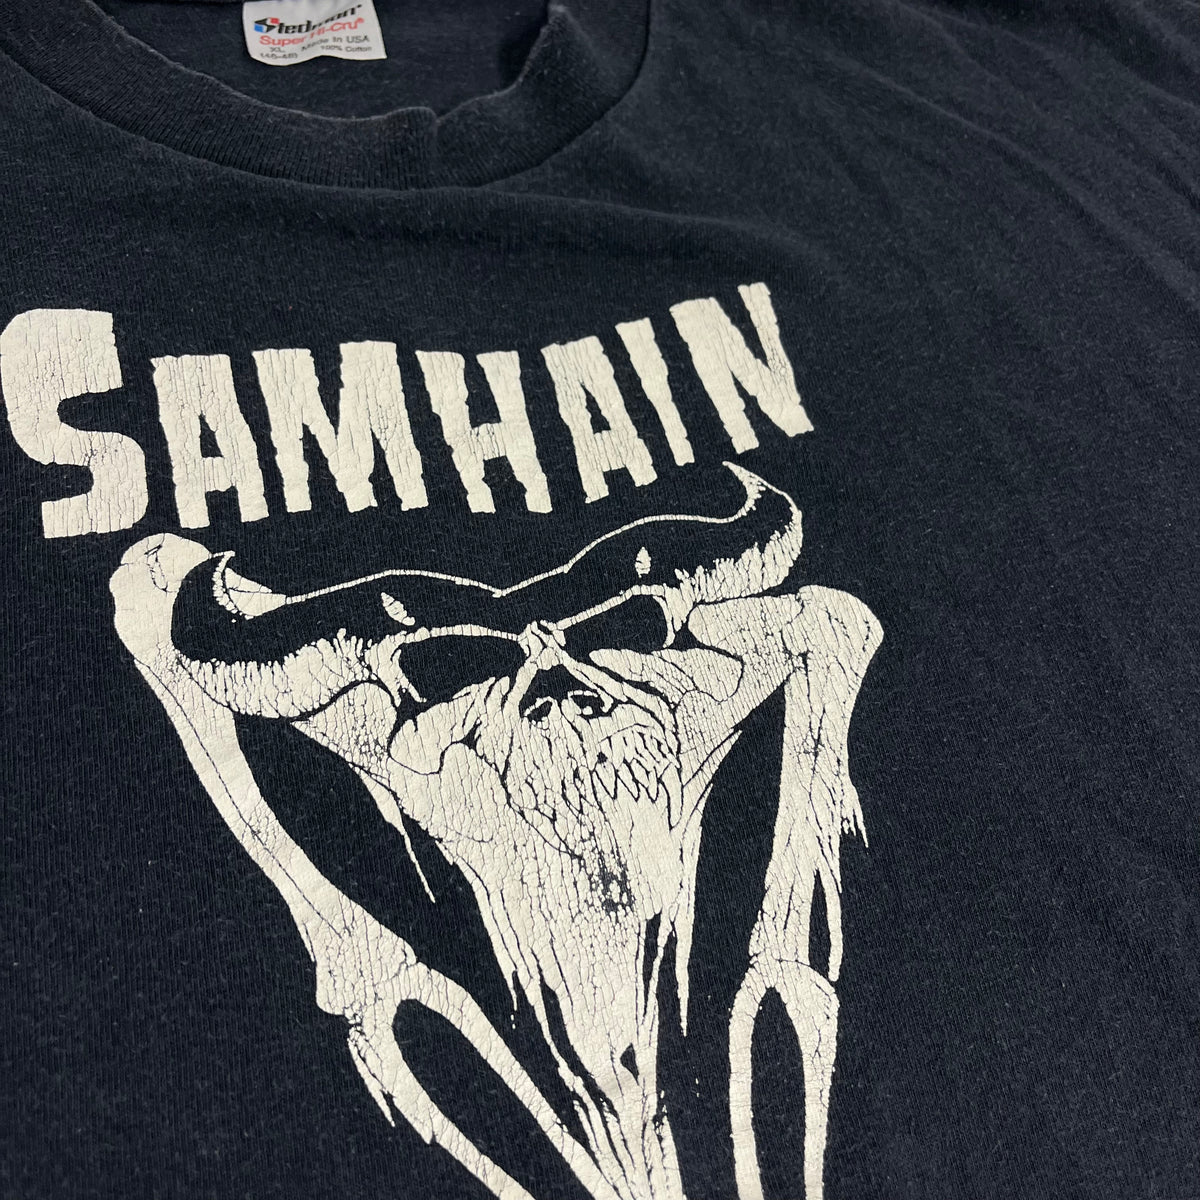 Vintage Samhain &quot;Plan 9&quot; T-Shirt